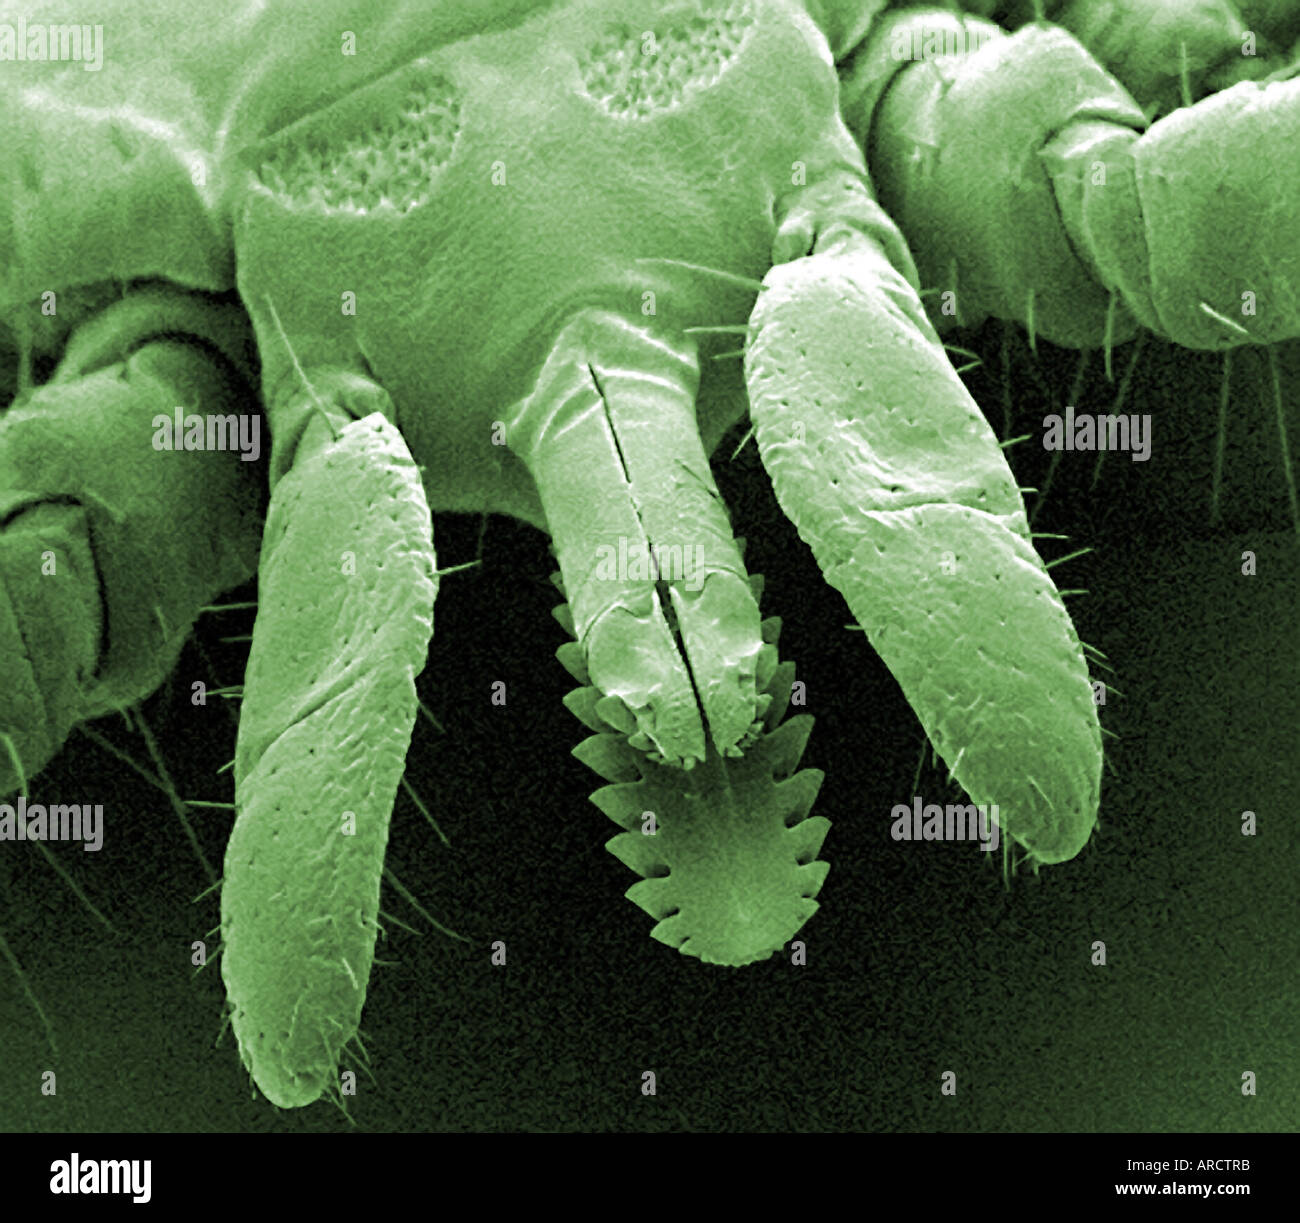 Una micrografia al microscopio elettronico a scansione (SEM) del cervo tick (Ixodes dammini), ingrandite x100. Questo è il vettore della malattia di Lyme. Foto Stock